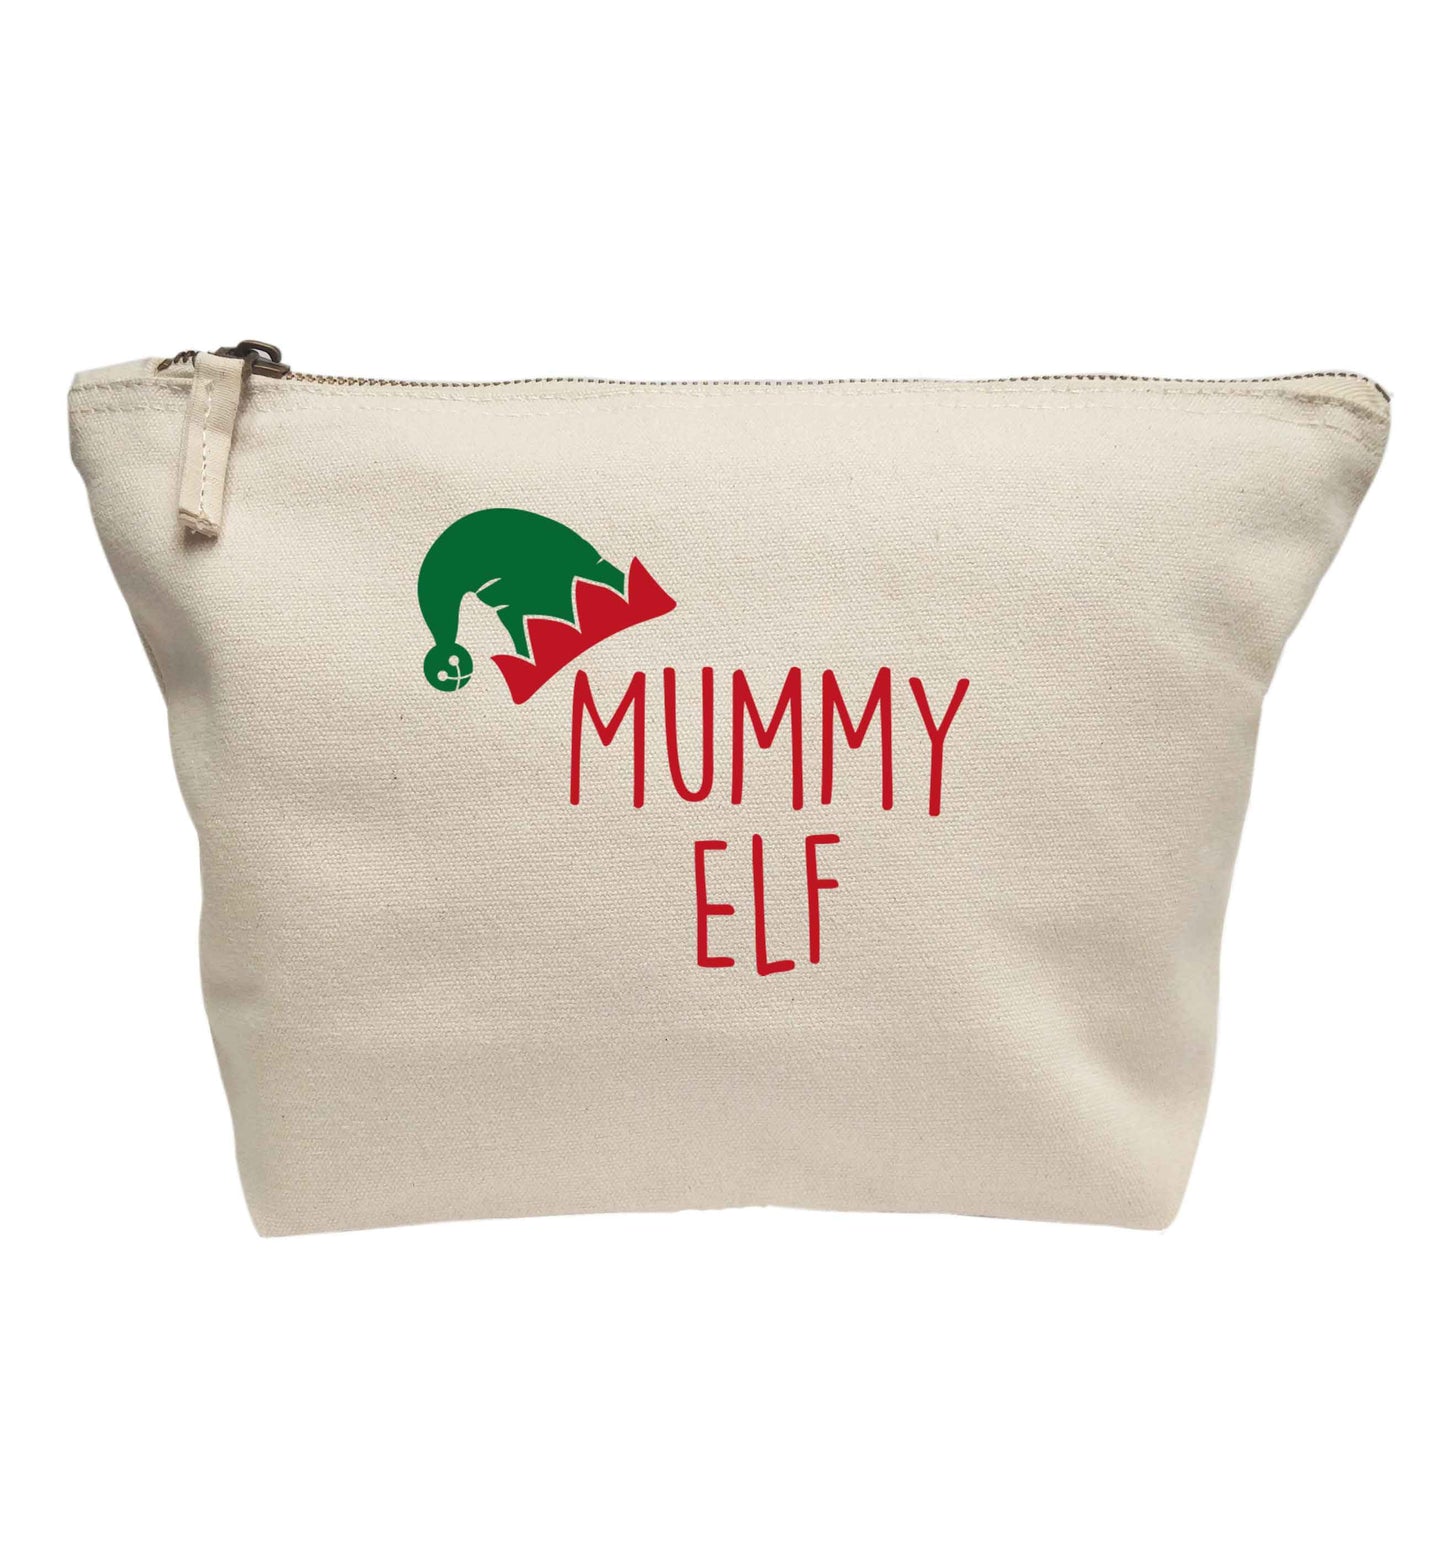 Mummy elf | Makeup / wash bag